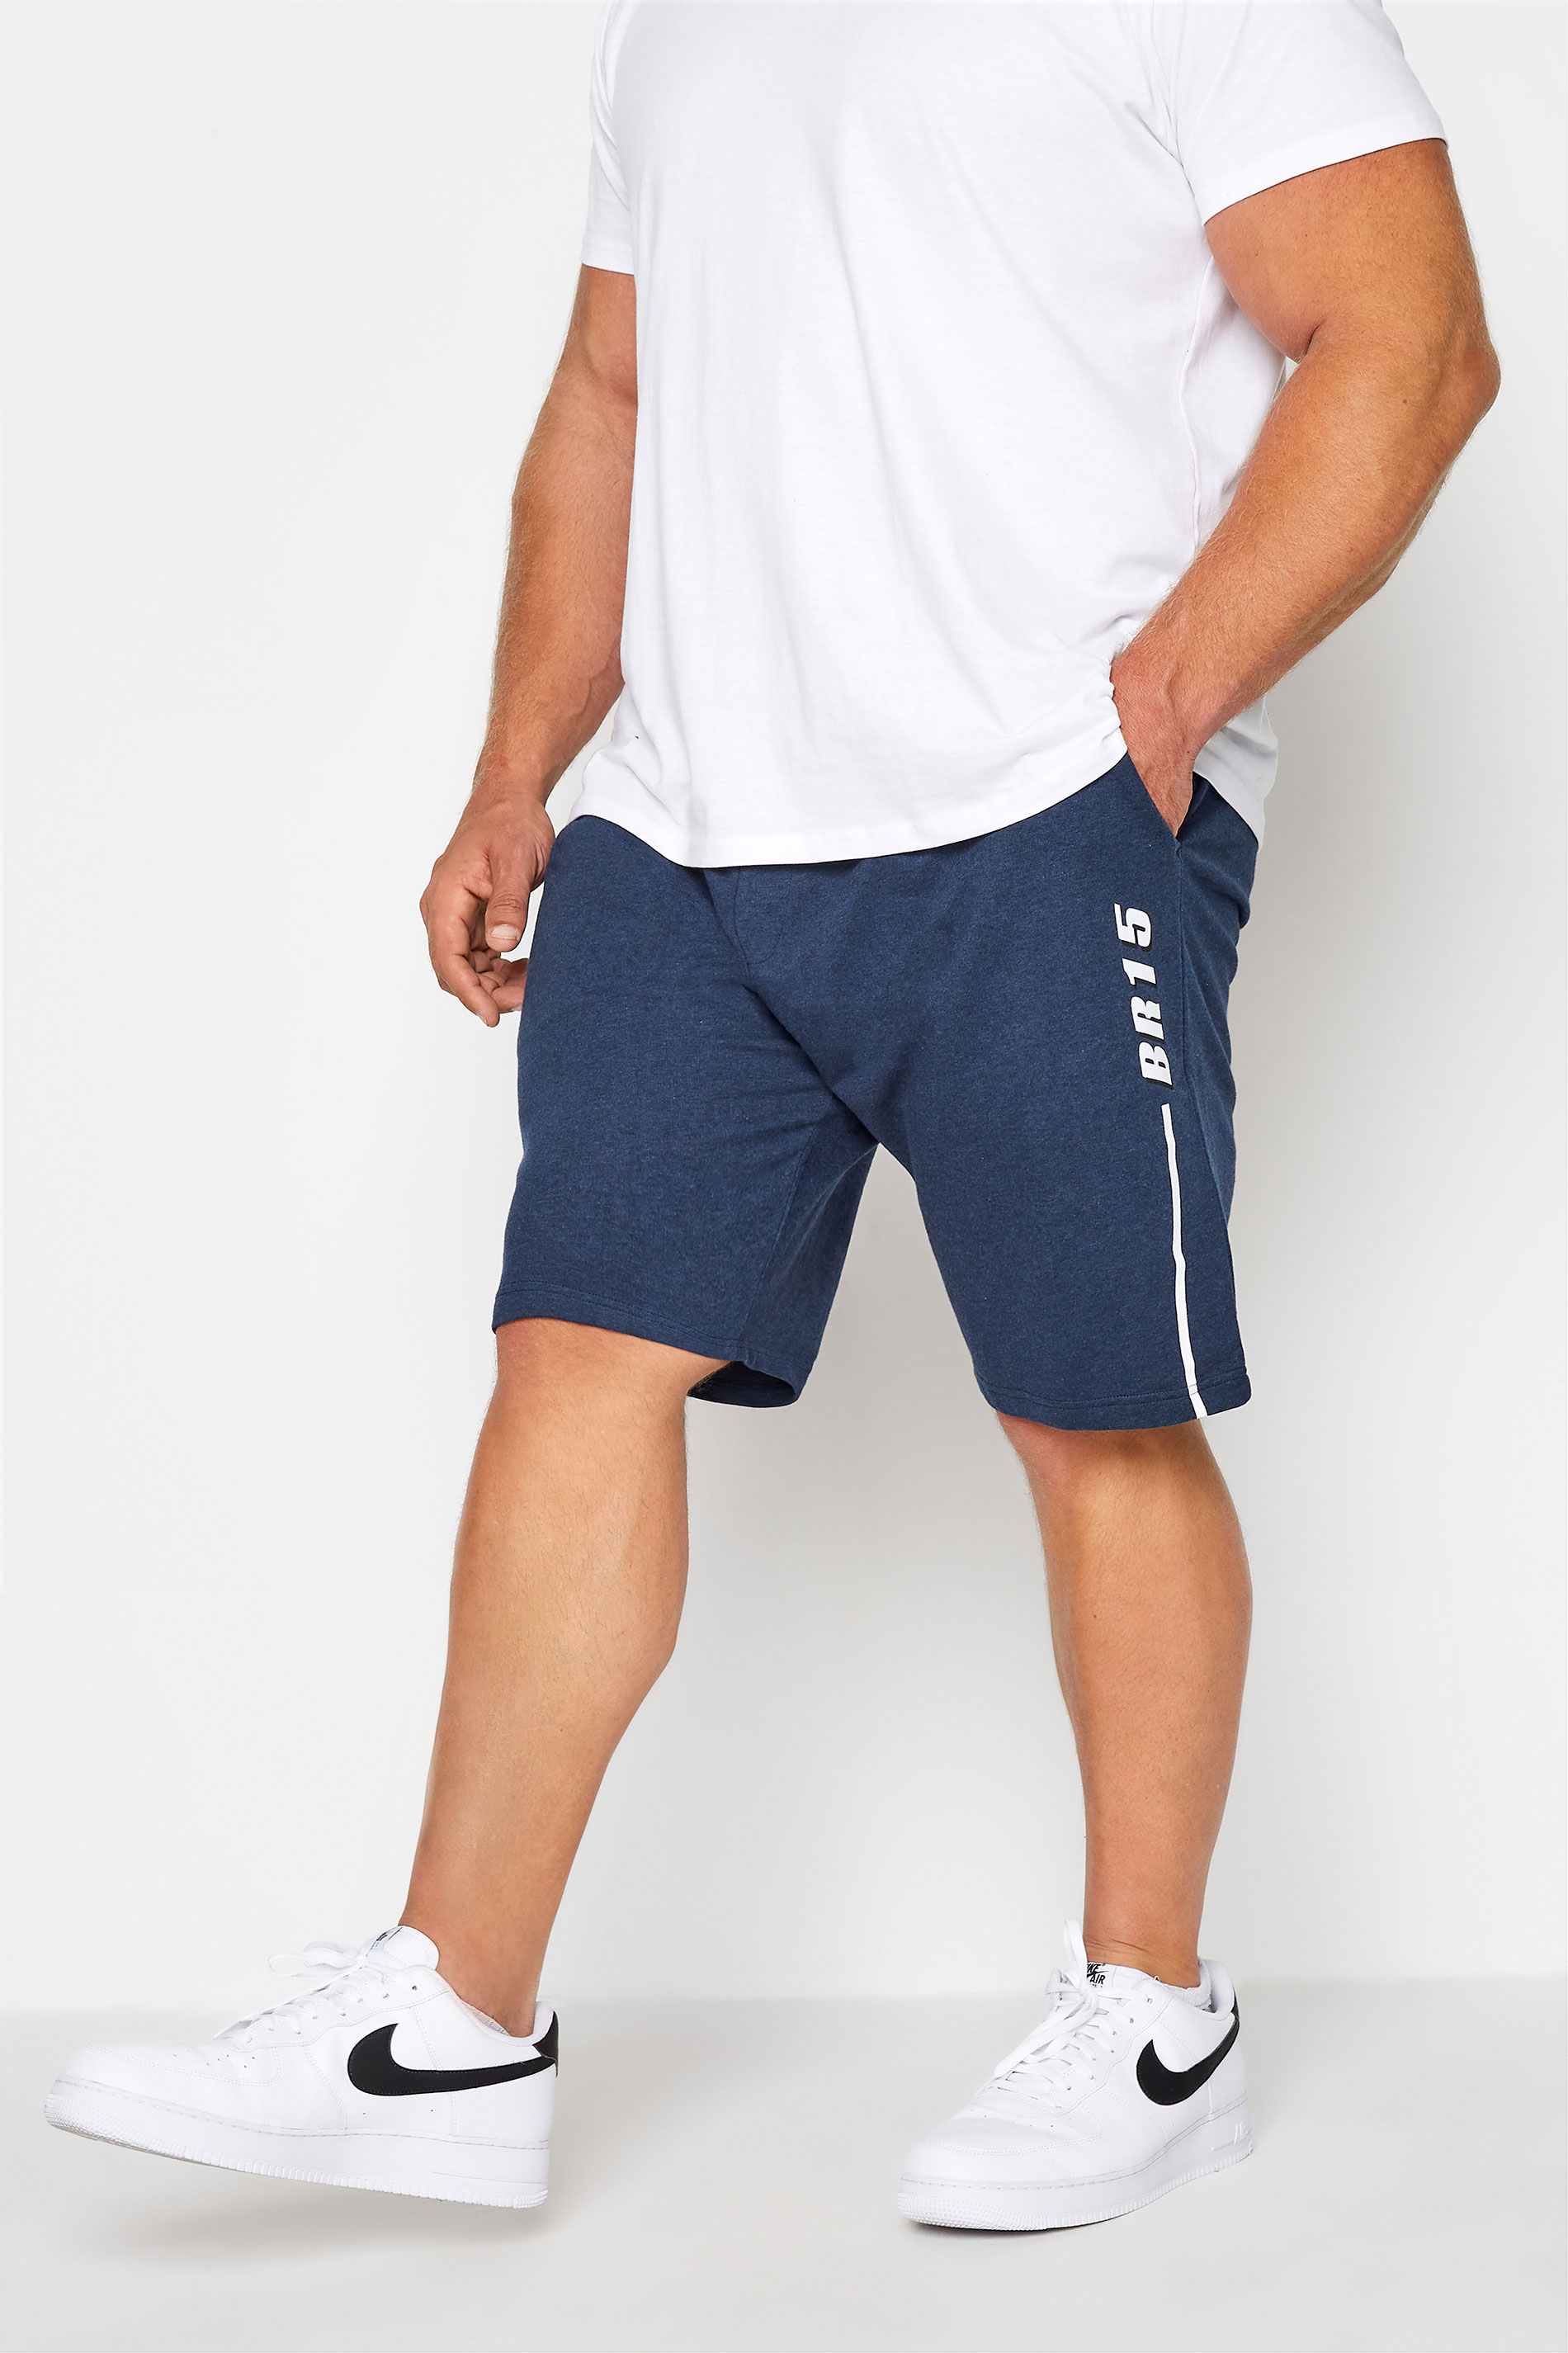 BadRhino Navy Blue Sweat Shorts | BadRhino 1